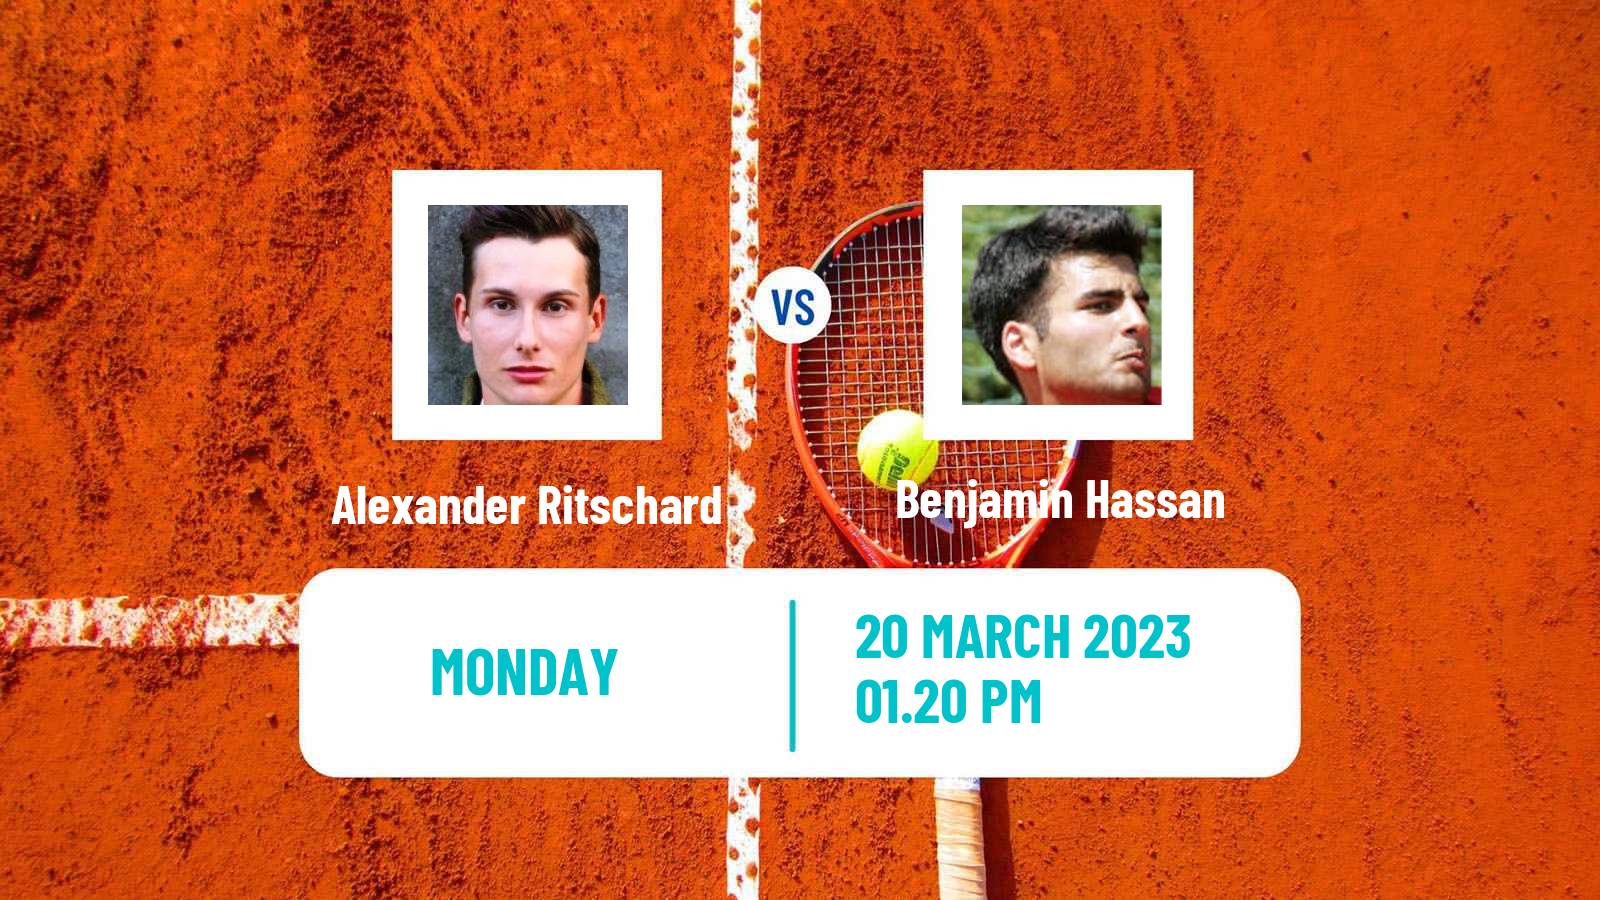 Tennis ATP Challenger Alexander Ritschard - Benjamin Hassan